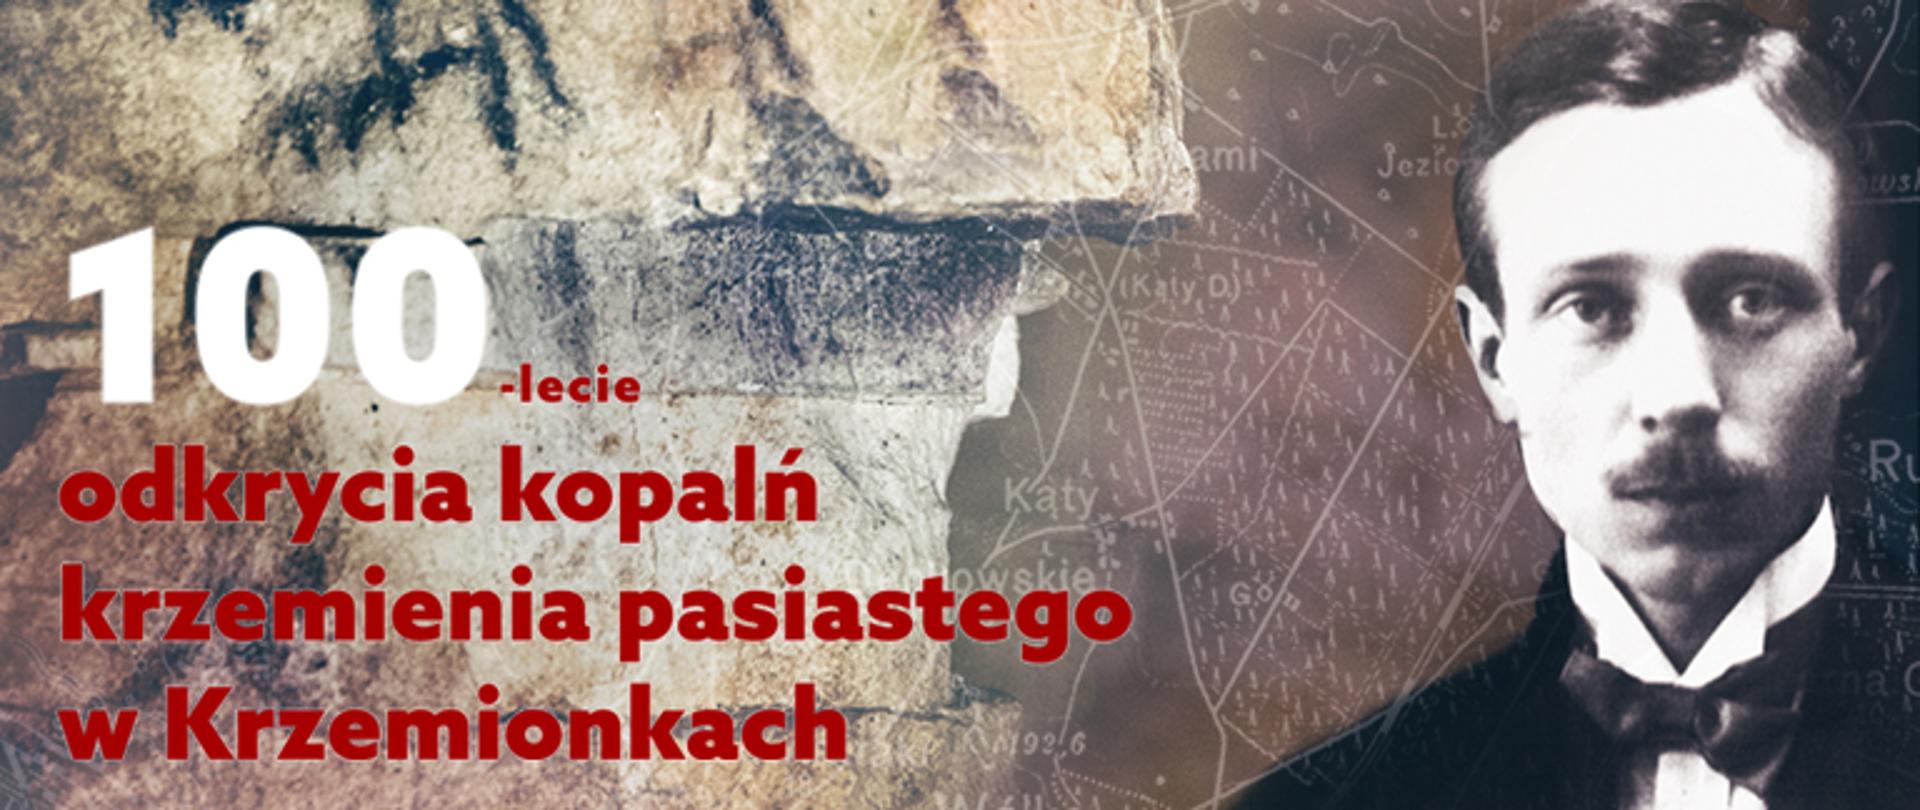 Inauguracja obchodów 100. rocznicy odkrycia zespołu pradziejowych kopalń krzemienia pasiastego w Krzemionkach